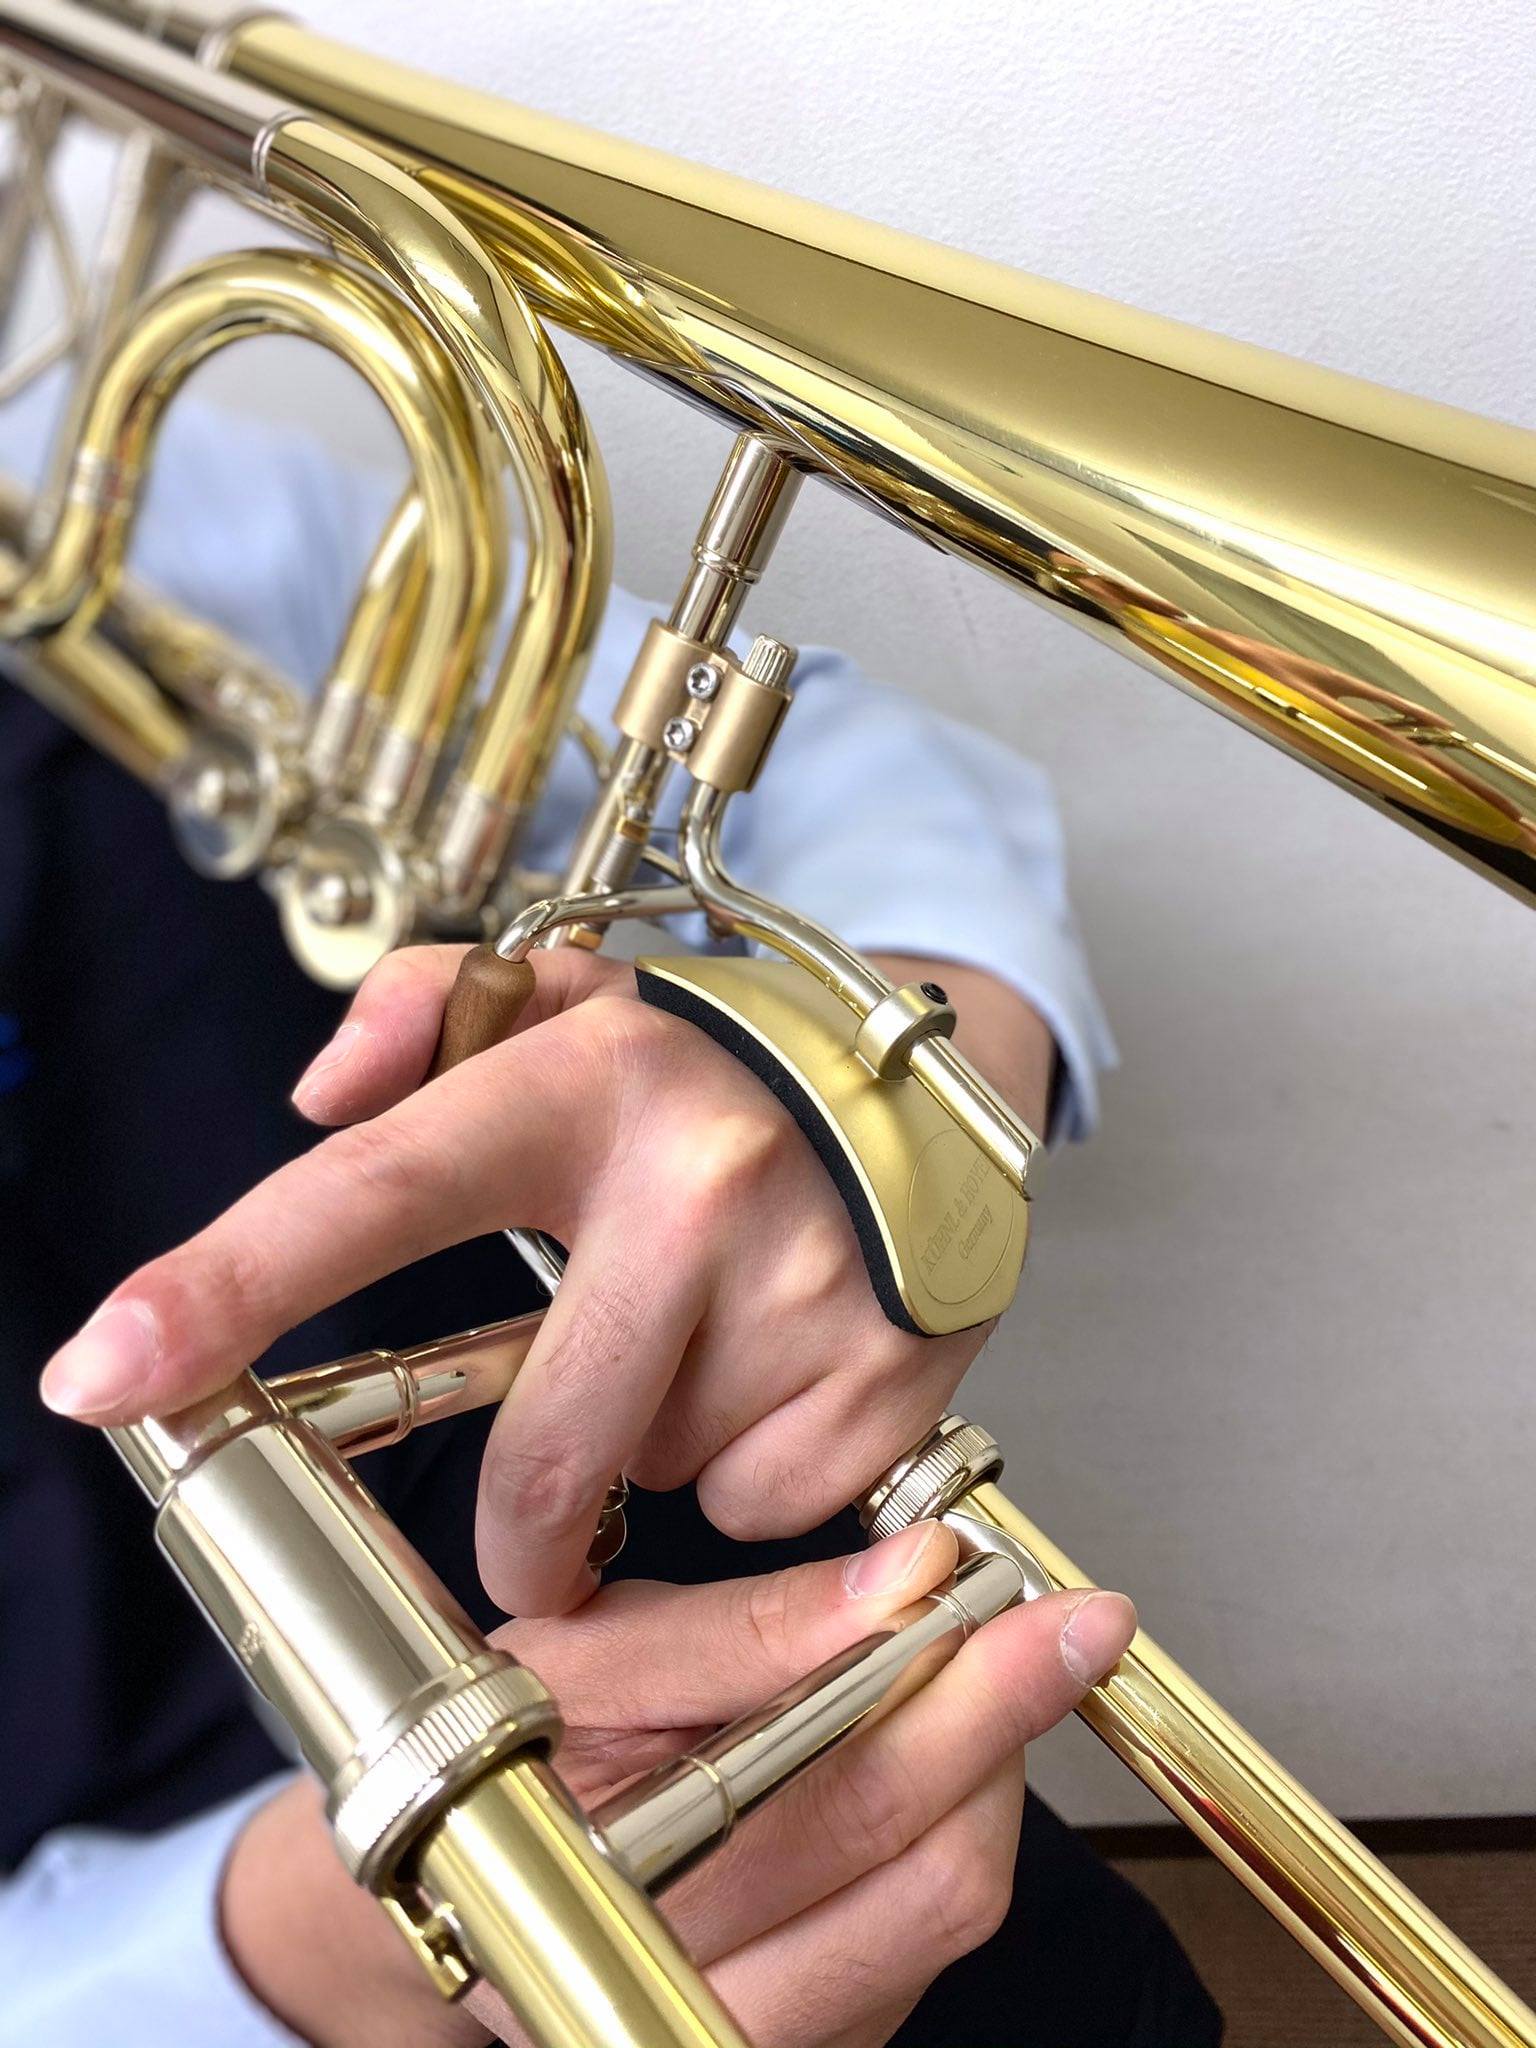 K H トロンボーン ハンドサポート入荷 管楽器は東京の管楽器専門店ダクで